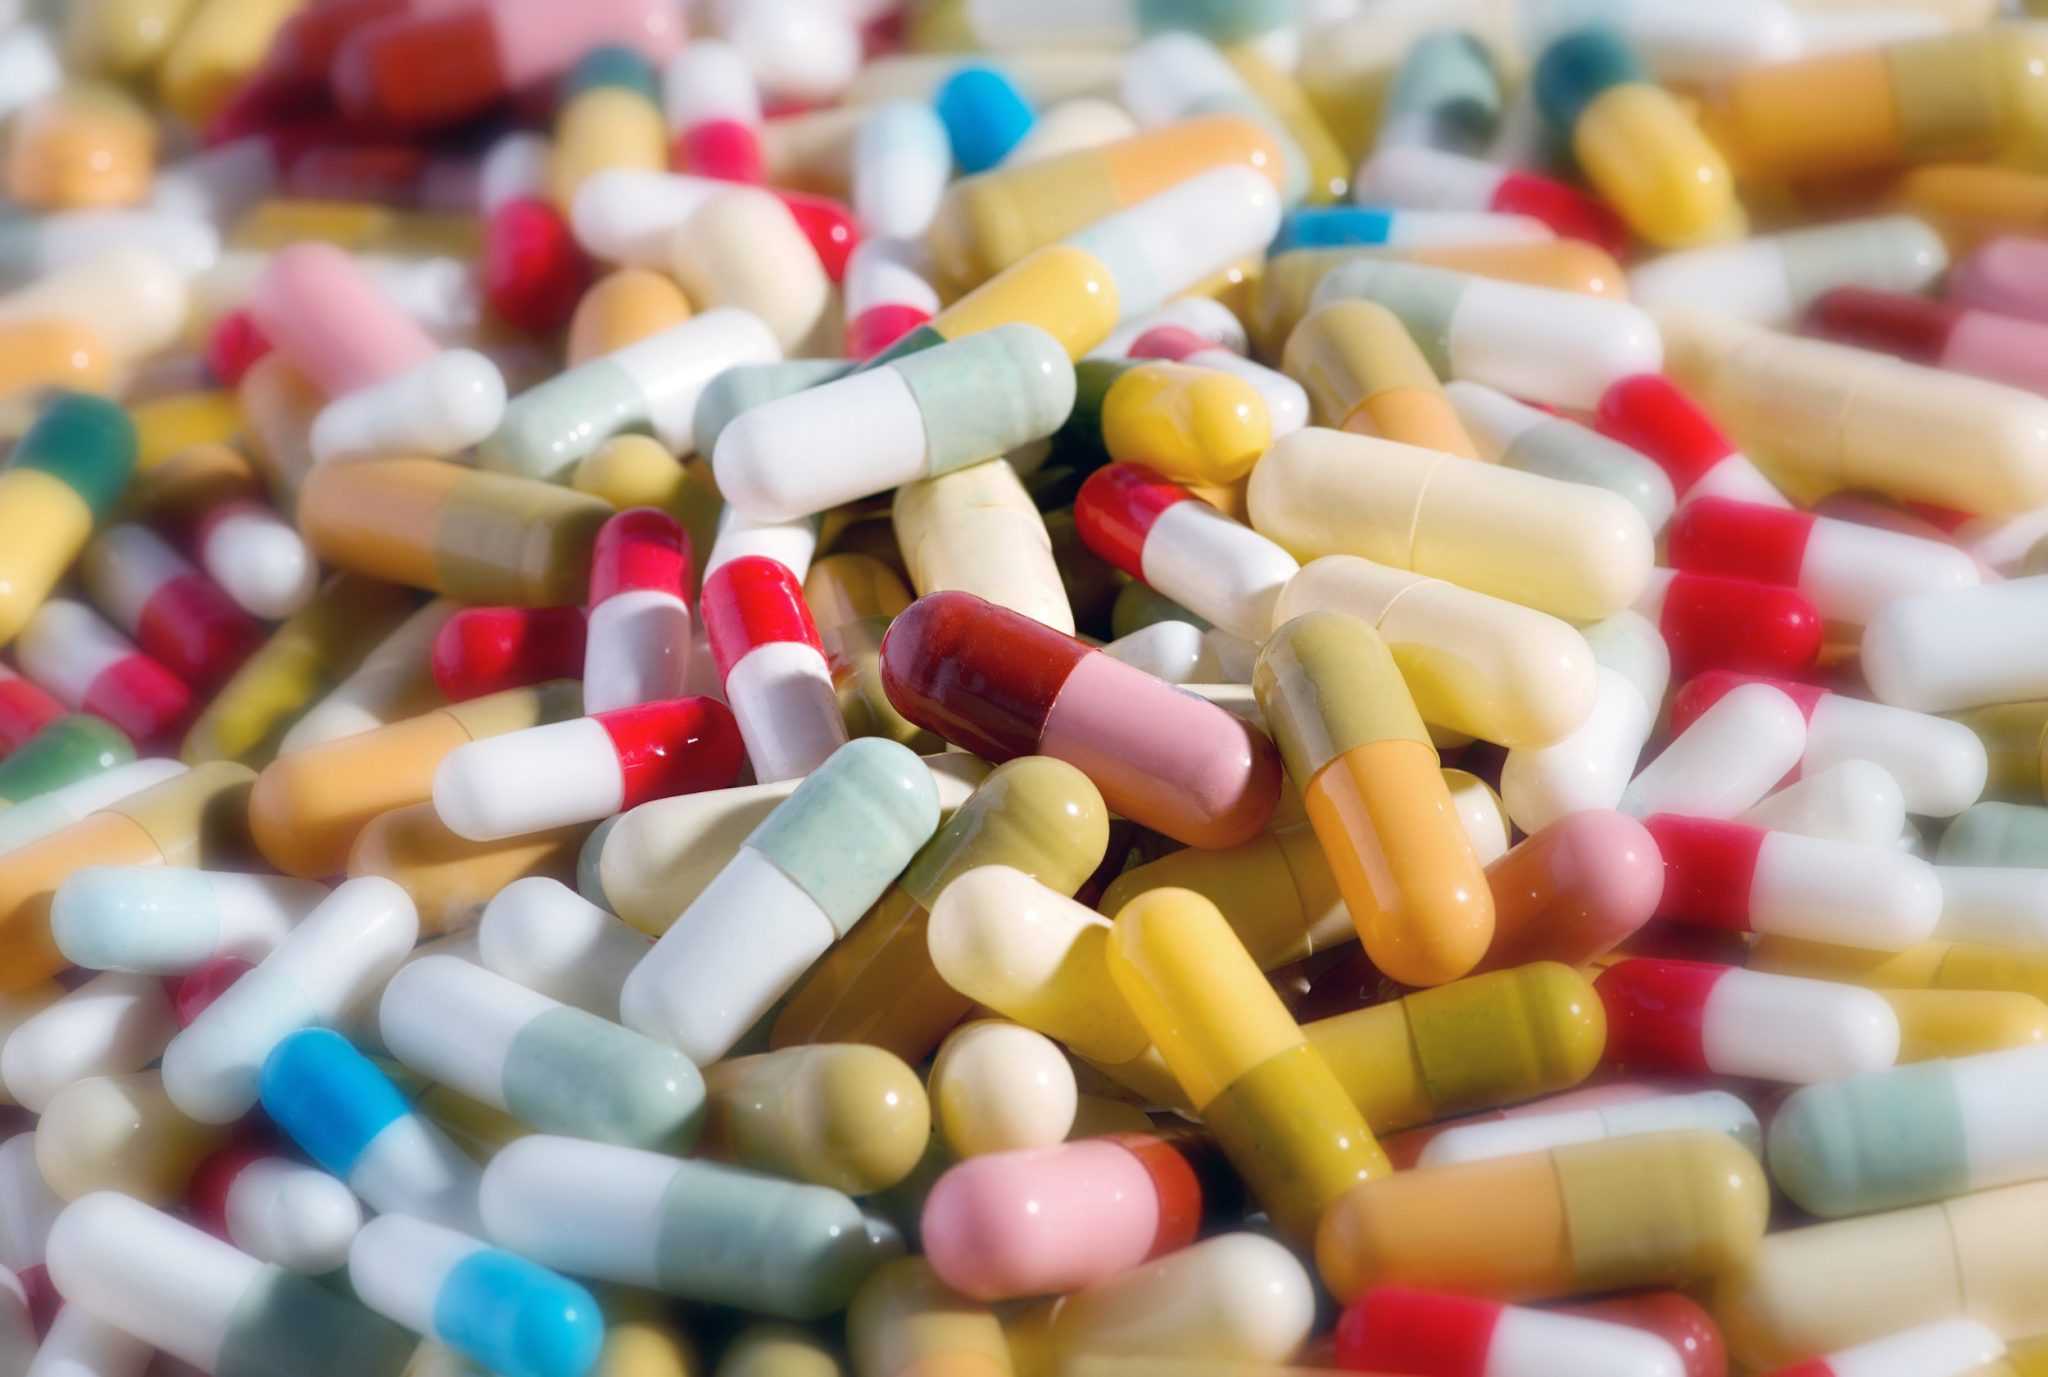 Антибиотики - скрытая угроза. Как защитить себя и своих детей от опасности